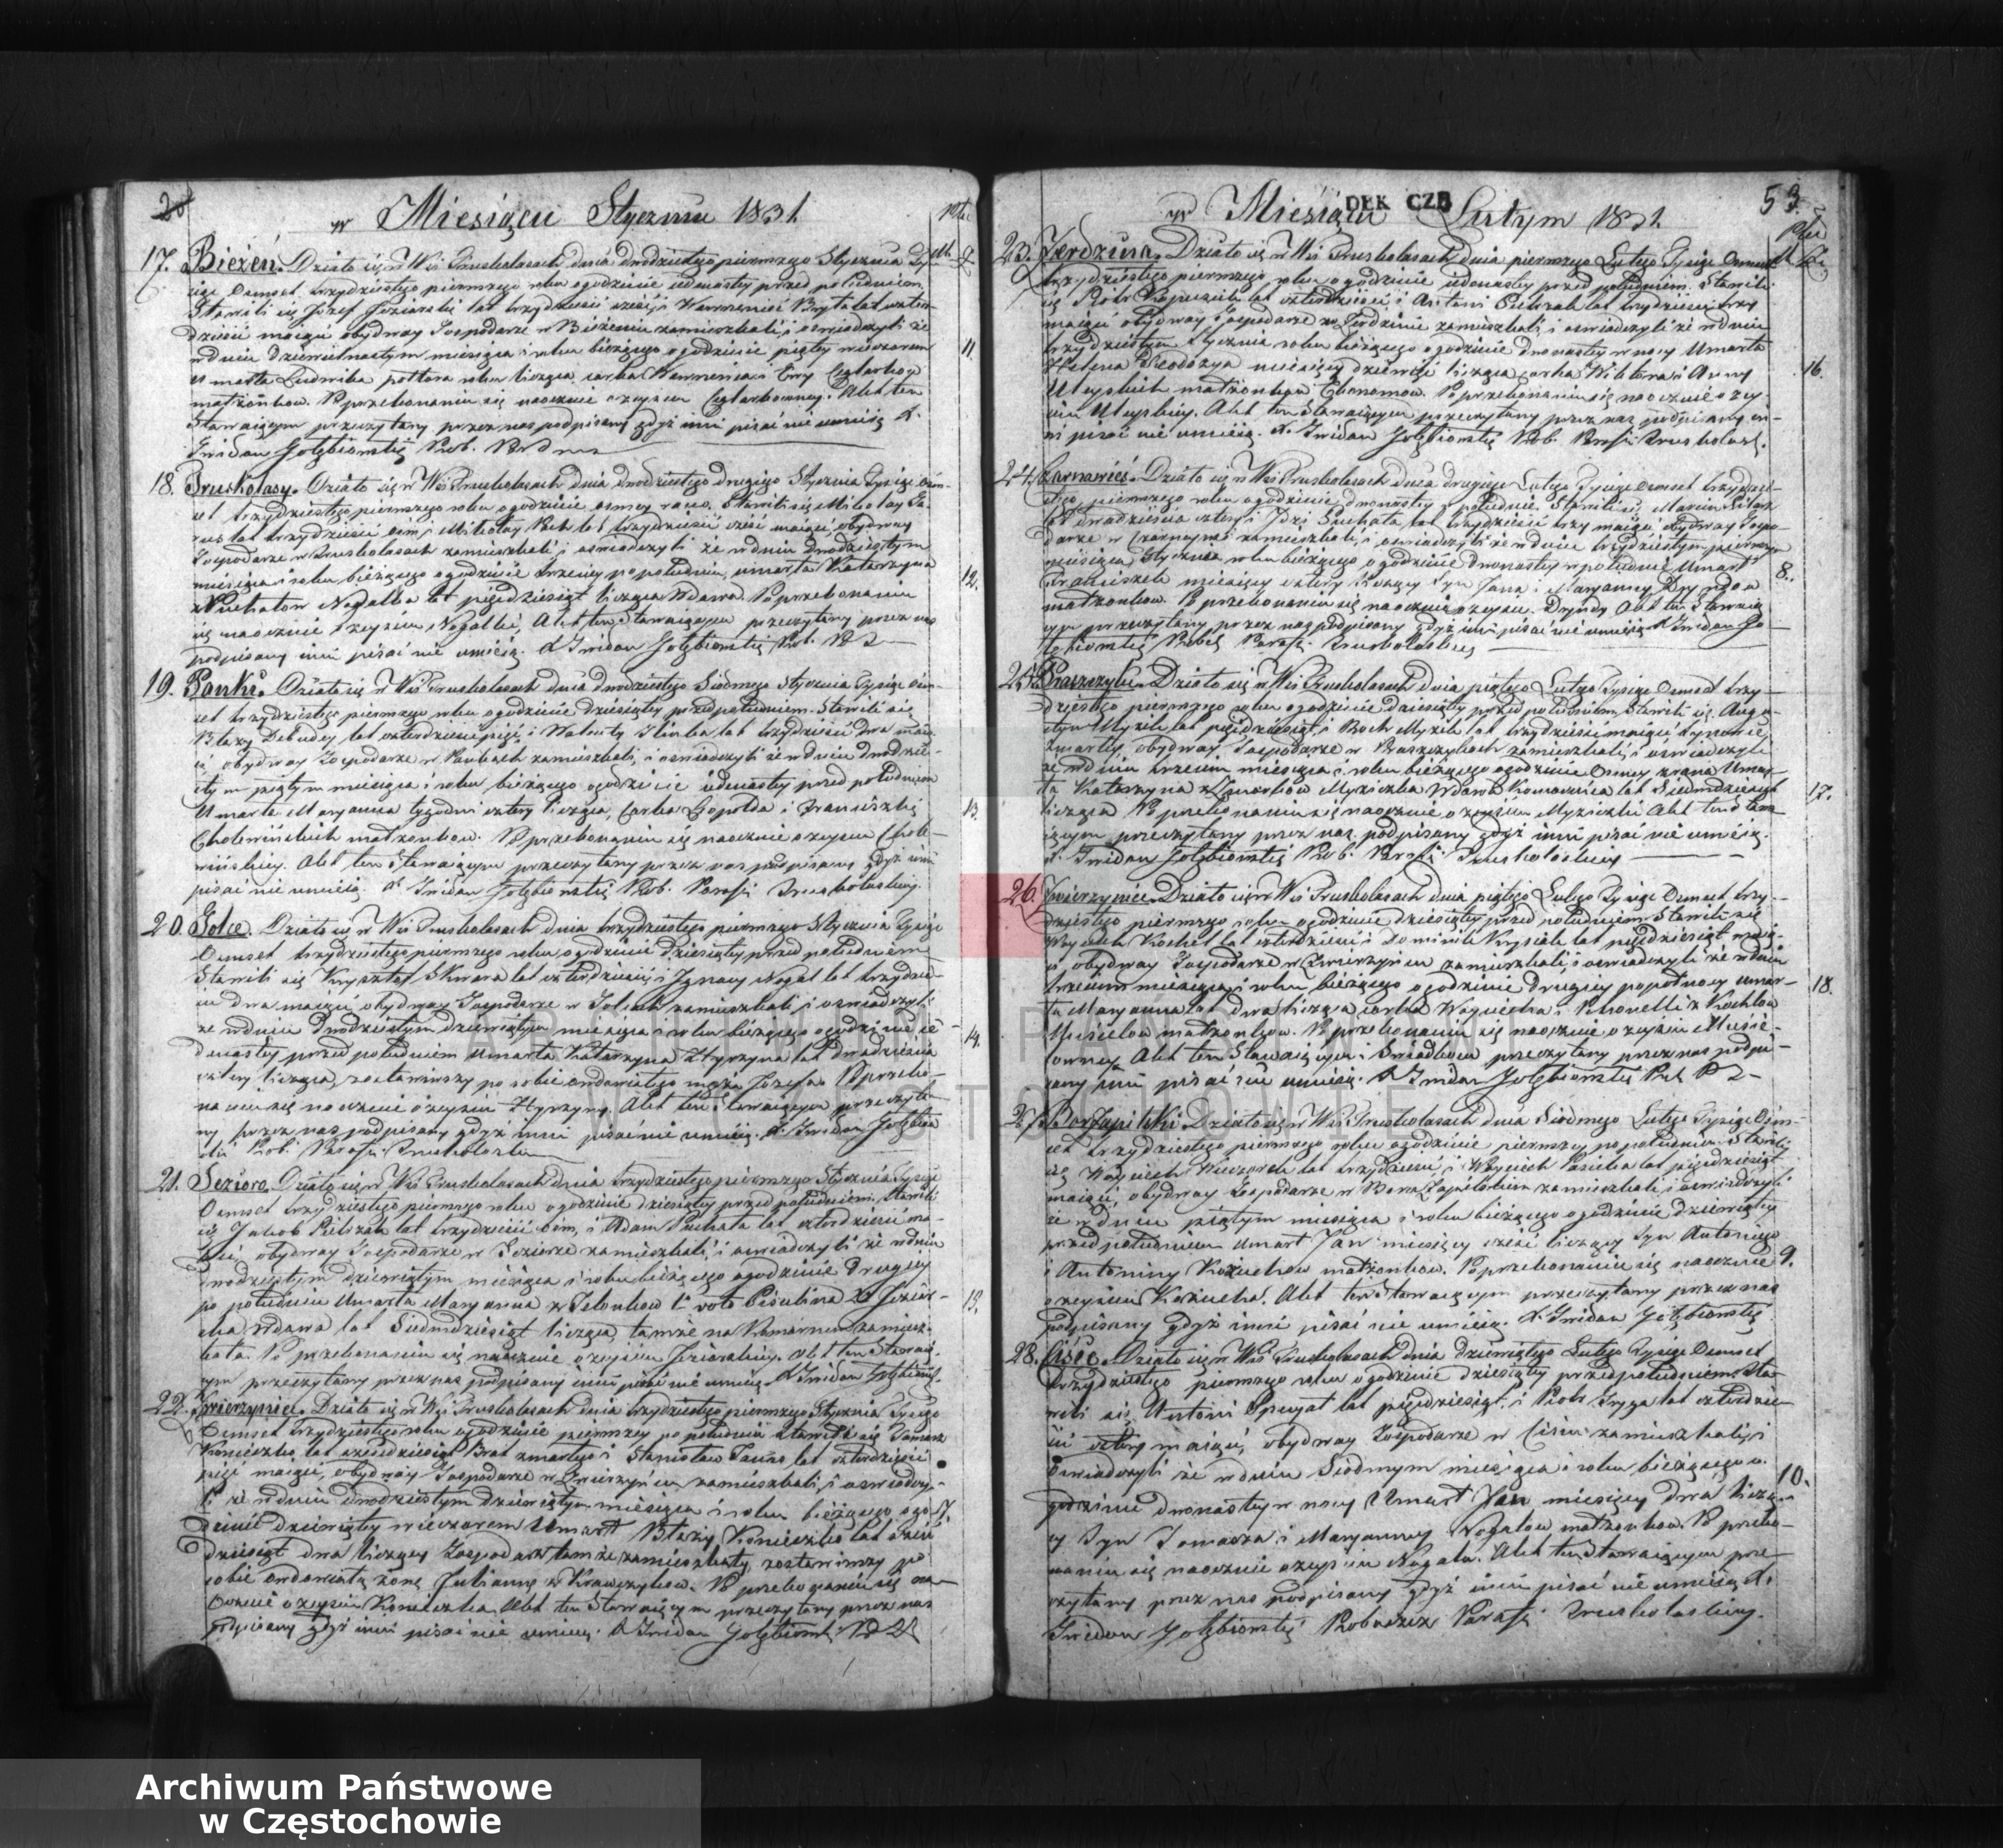 Skan z jednostki: Duplikat akt religijno - cywilnych urodzenia, małżeństw, zejścia Parafii Truskolasy na rok 1831